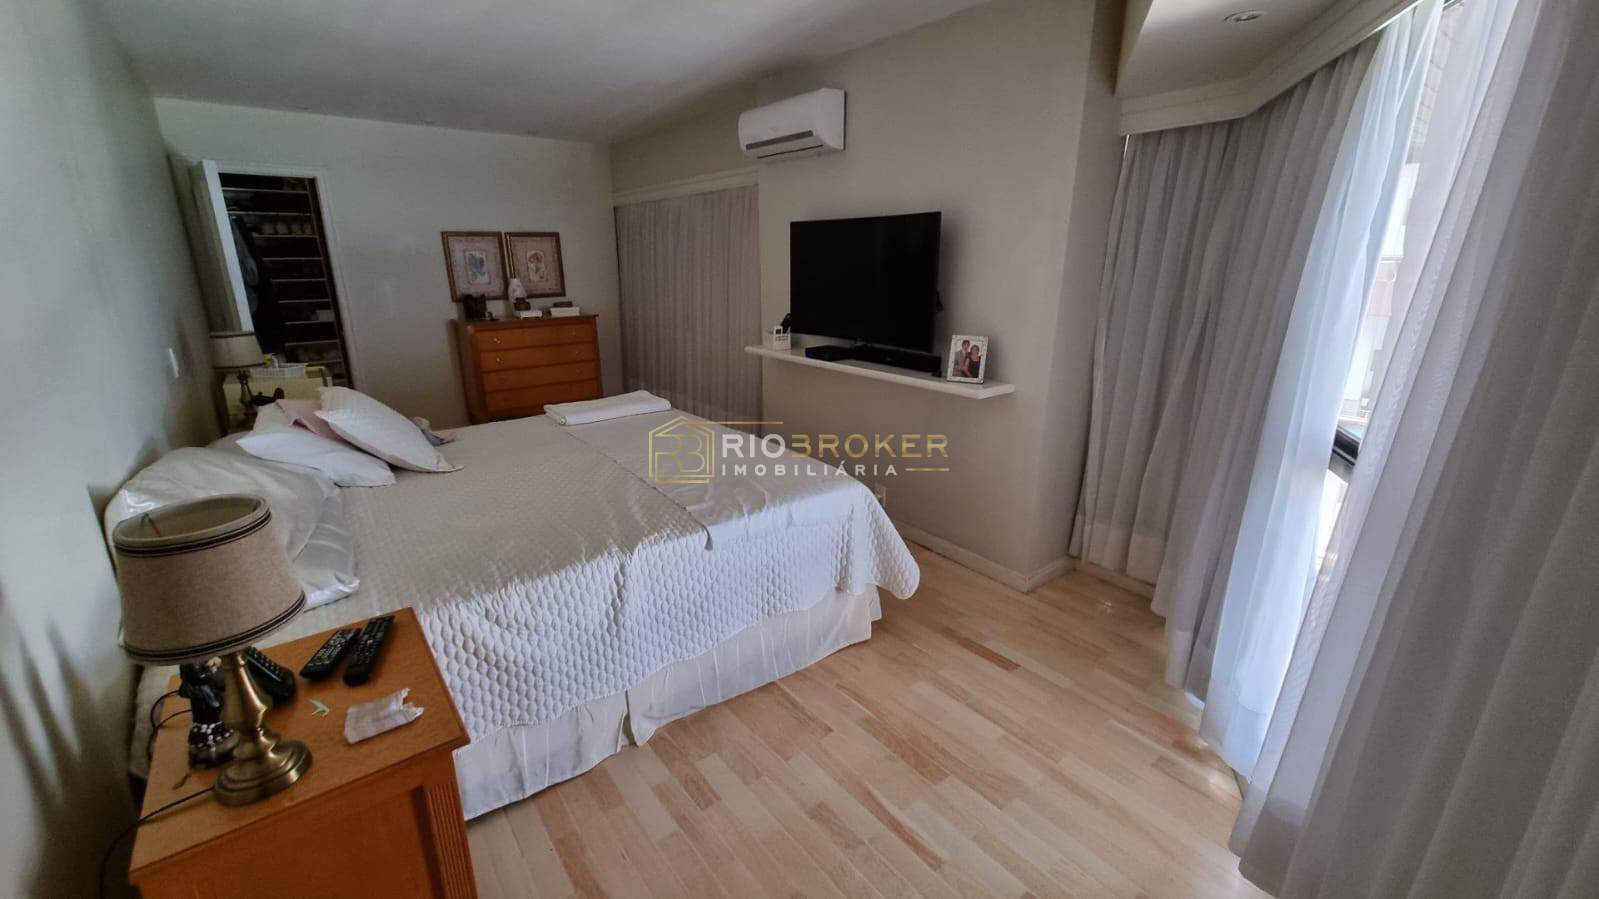 Apartamento de 4 quartos à venda - Barra da Tijuca - Condomínio Barra Mares